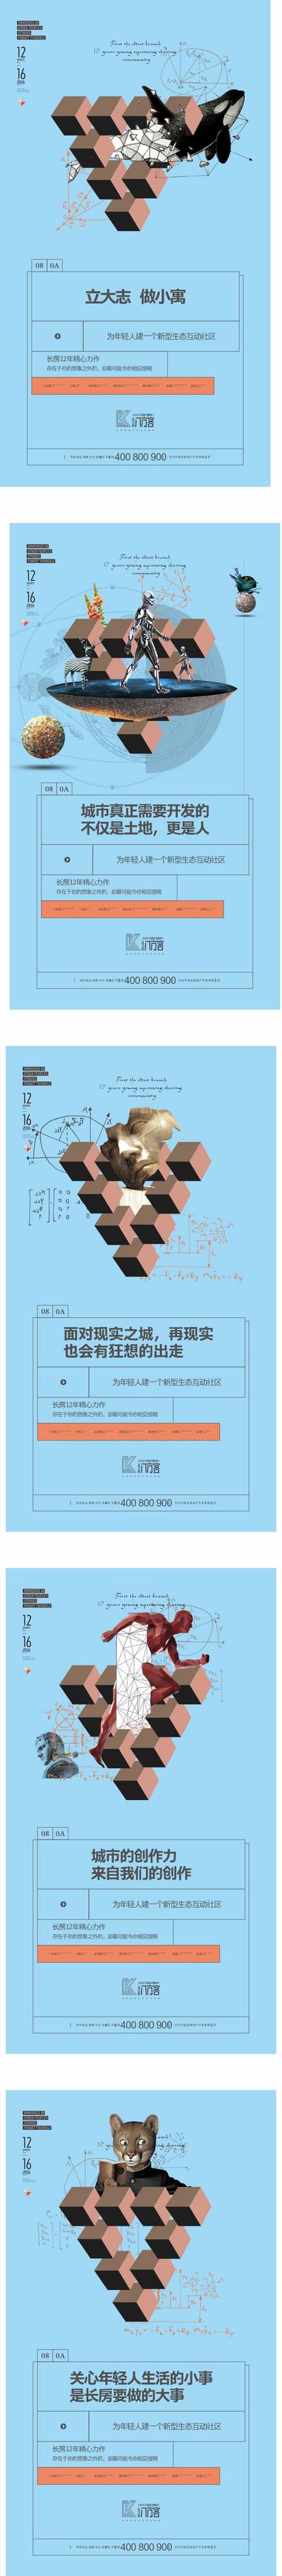 【南门网】海报 地产 公寓 广告 小户型 魔方 公式 数学 物理 创意